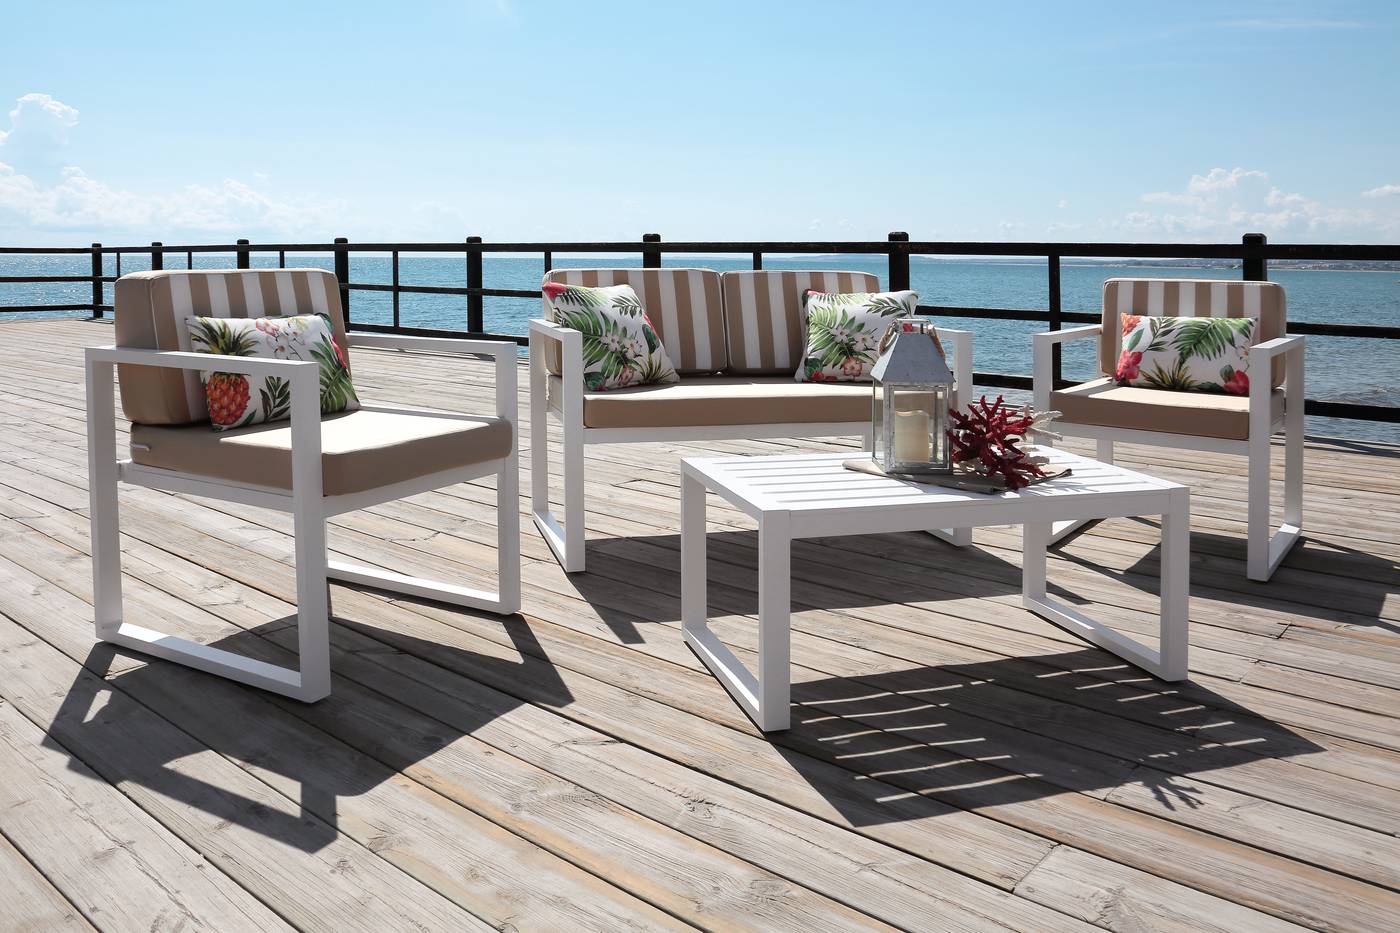 Conjunto aluminio : 1 sofá de 2 plazas + 2 sillones + 1 mesa de centro + cojines. Disponible en color blanco, plata o antracita.